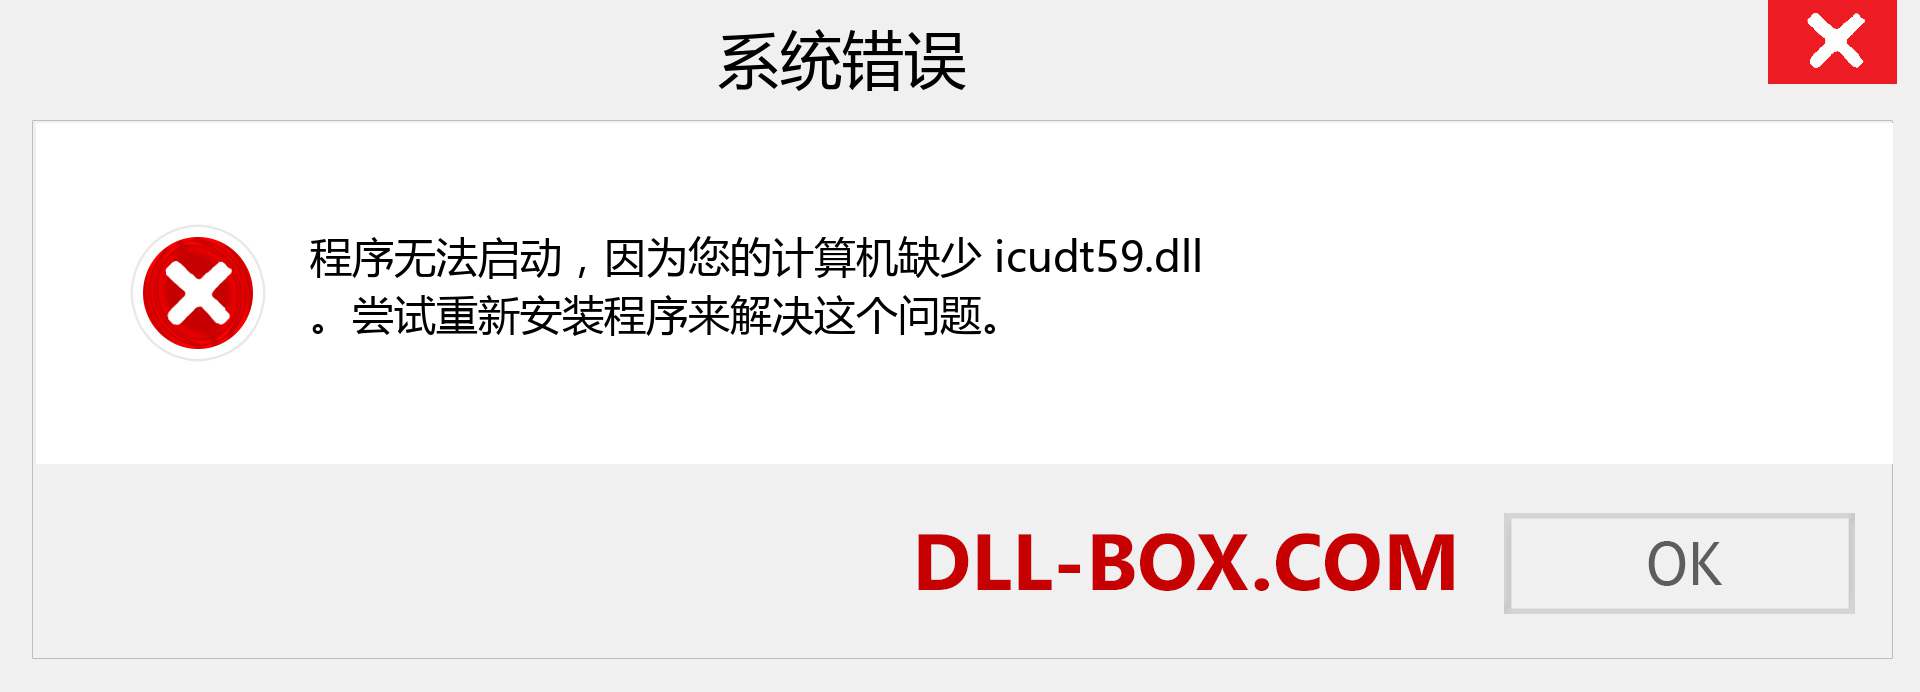 icudt59.dll 文件丢失？。 适用于 Windows 7、8、10 的下载 - 修复 Windows、照片、图像上的 icudt59 dll 丢失错误